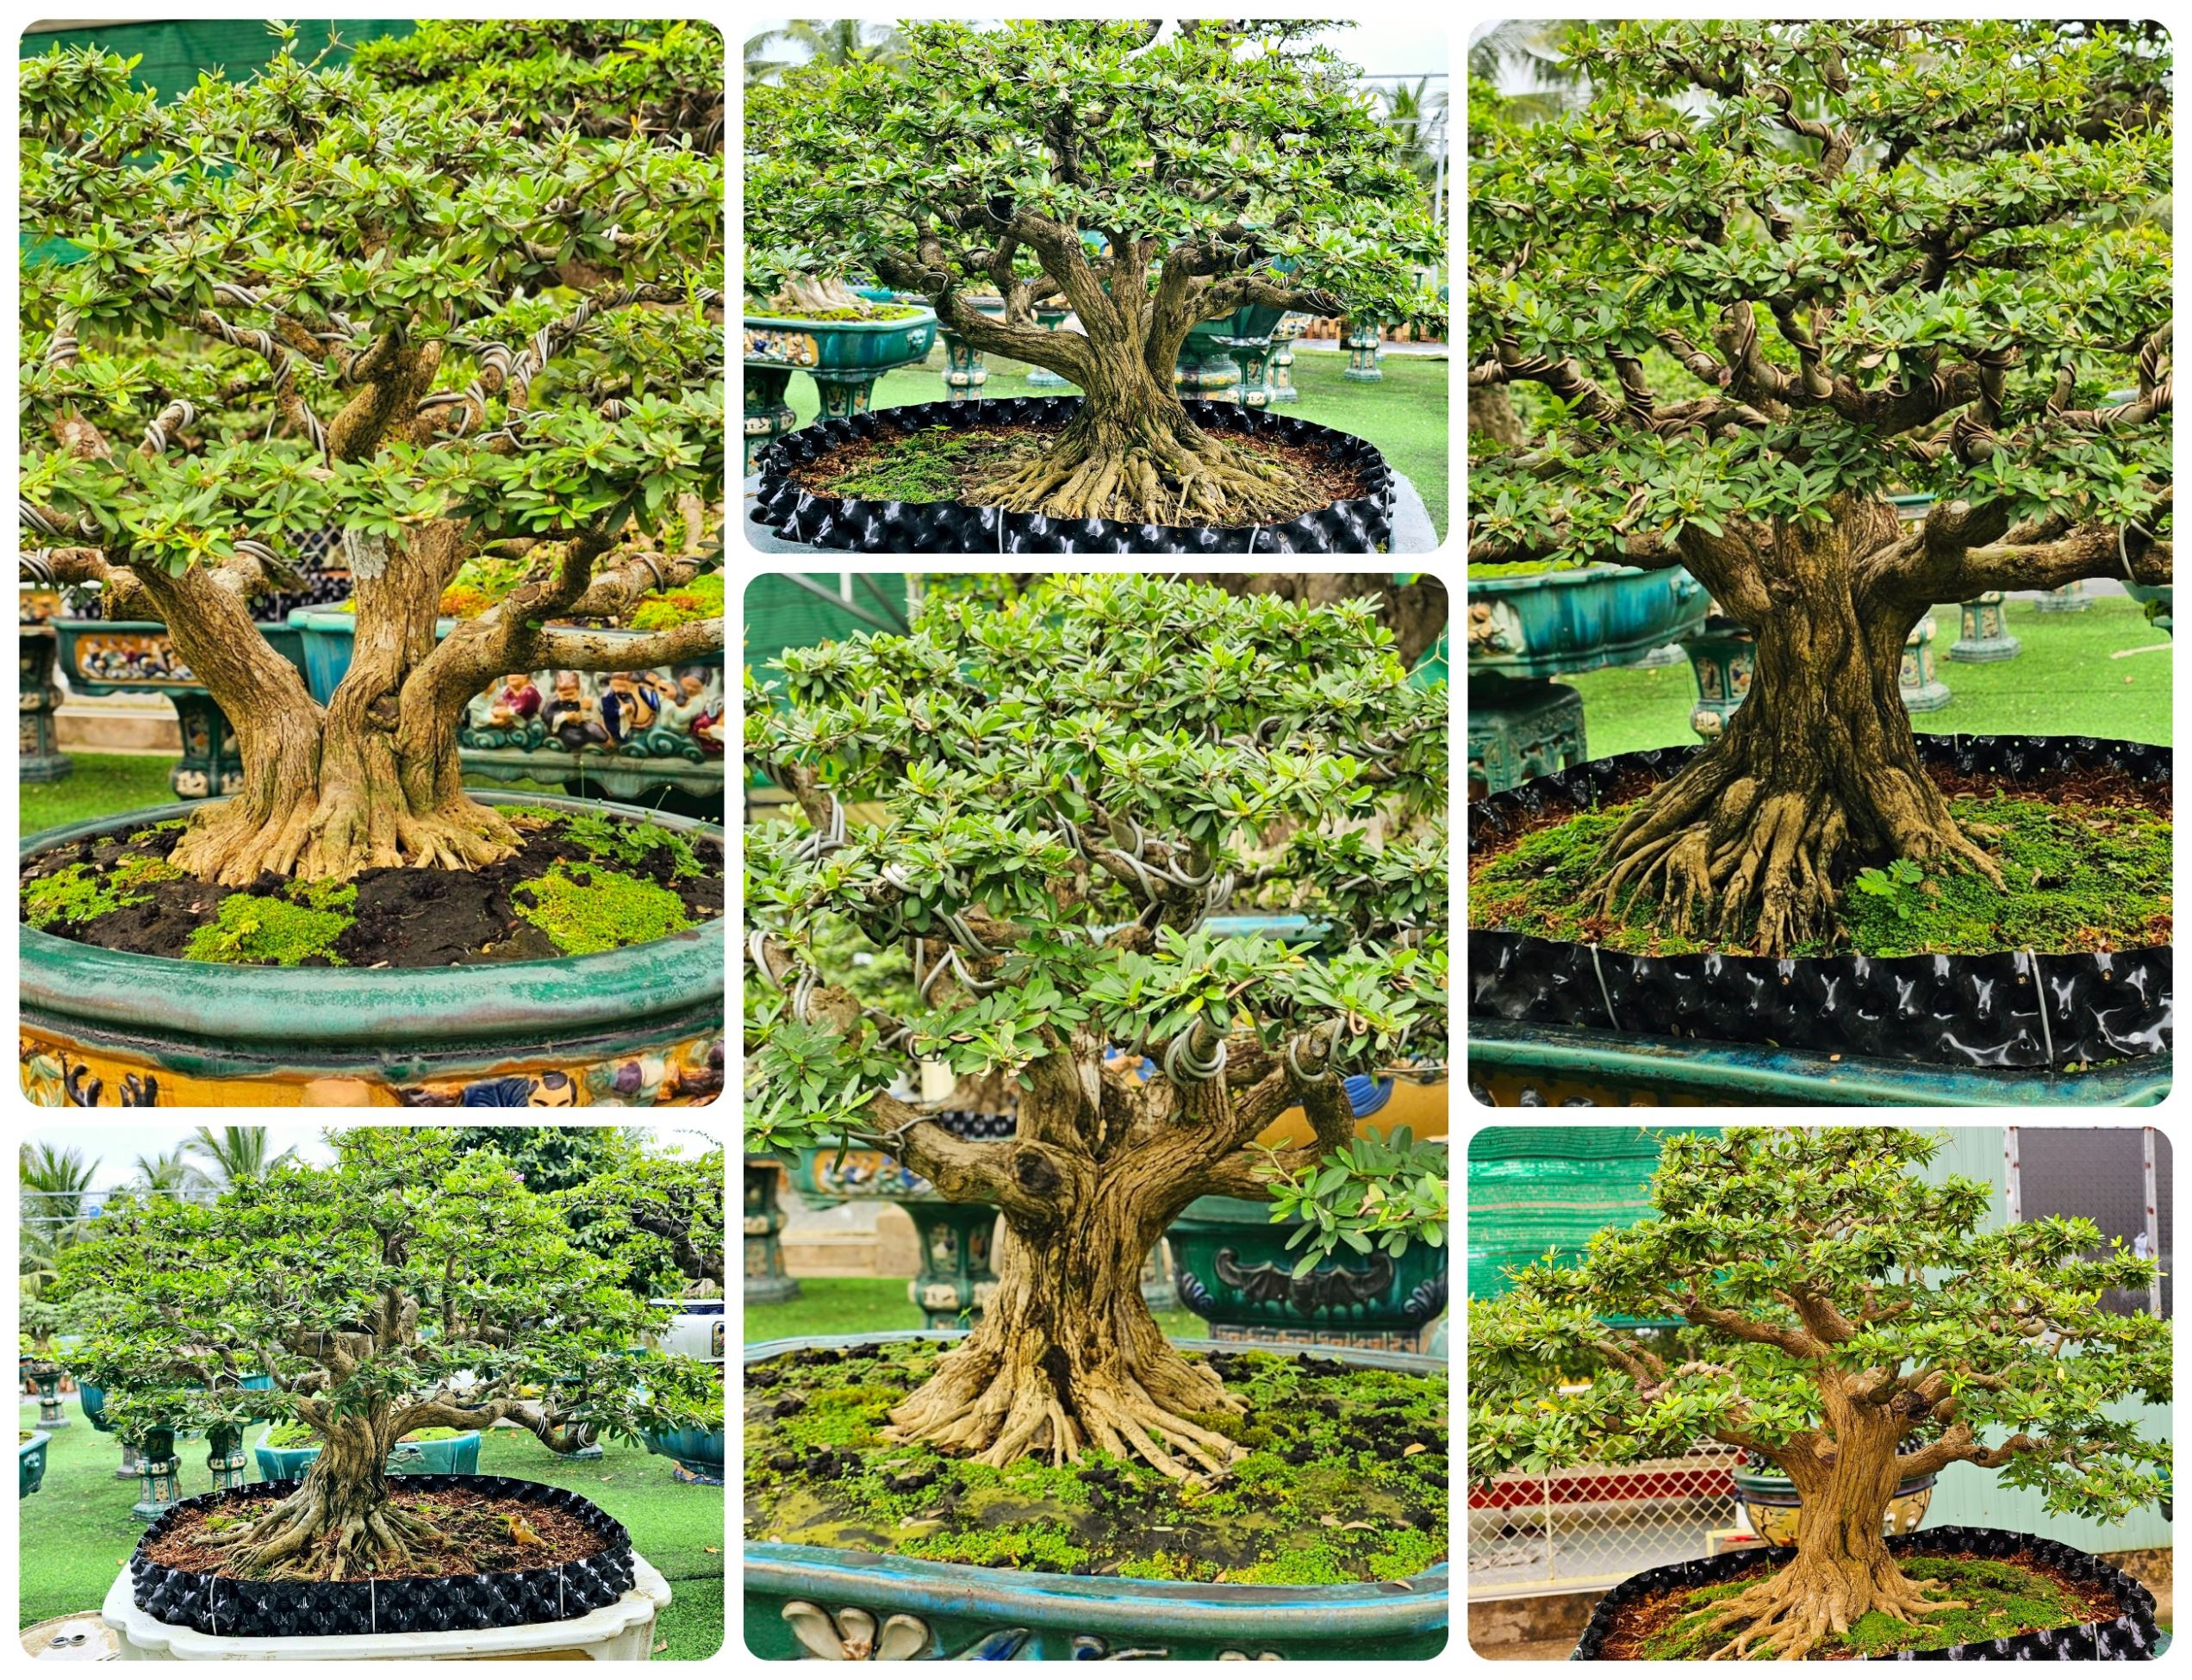 Dáng thế bonsai Linh Sam vừa uyển chuyển vừa mạnh mẽ, khỏe mạnh do nghệ nhân Hoàng thực hiện.